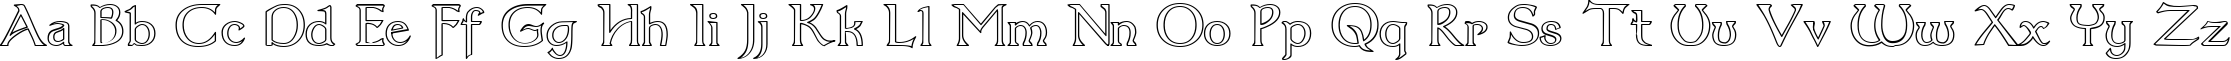 Пример написания английского алфавита шрифтом Dumbledor 3 Outline